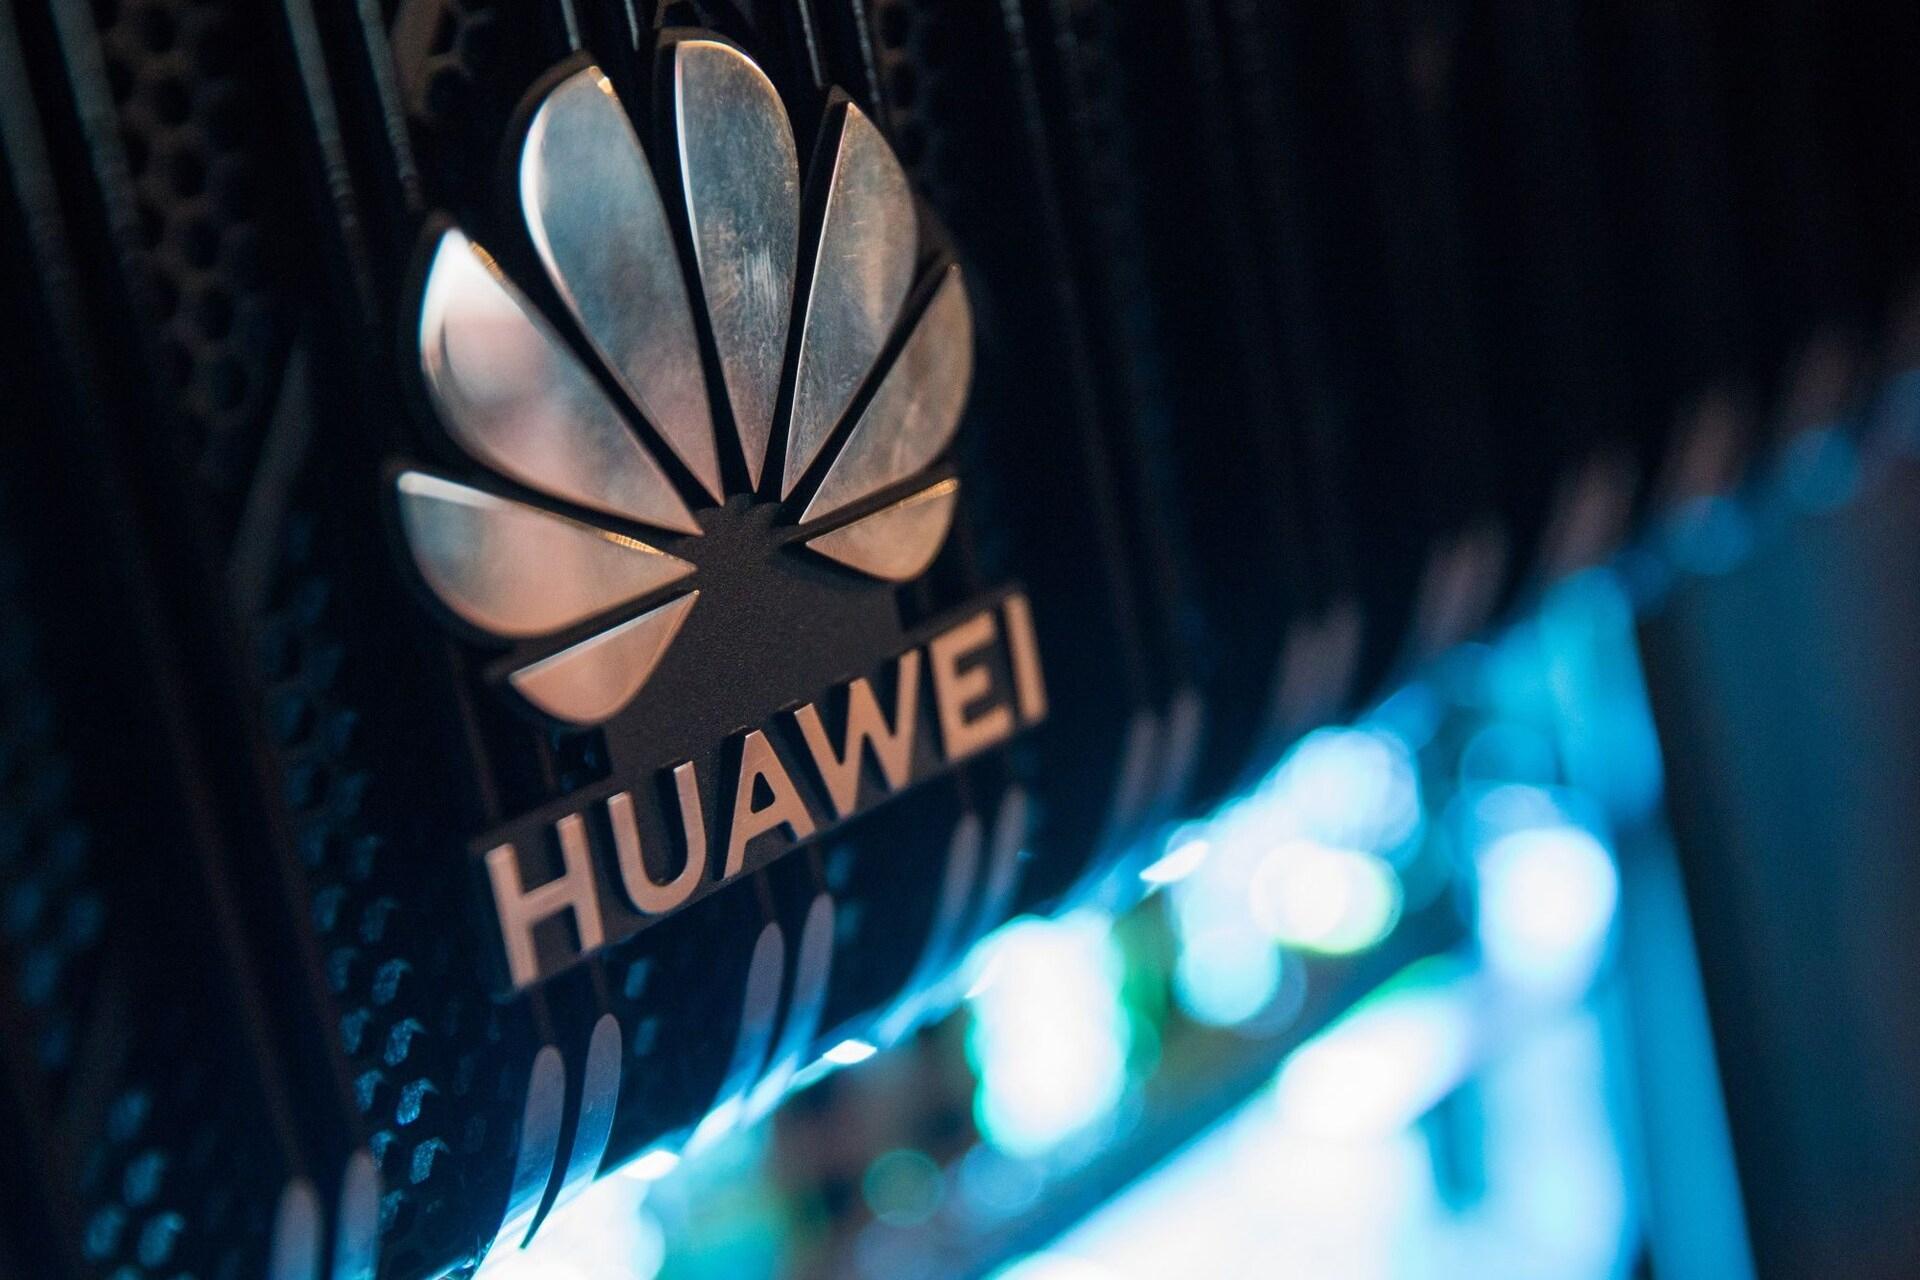 لوگو هواوی Huawei روی مودم روتر از نمای نزدیک